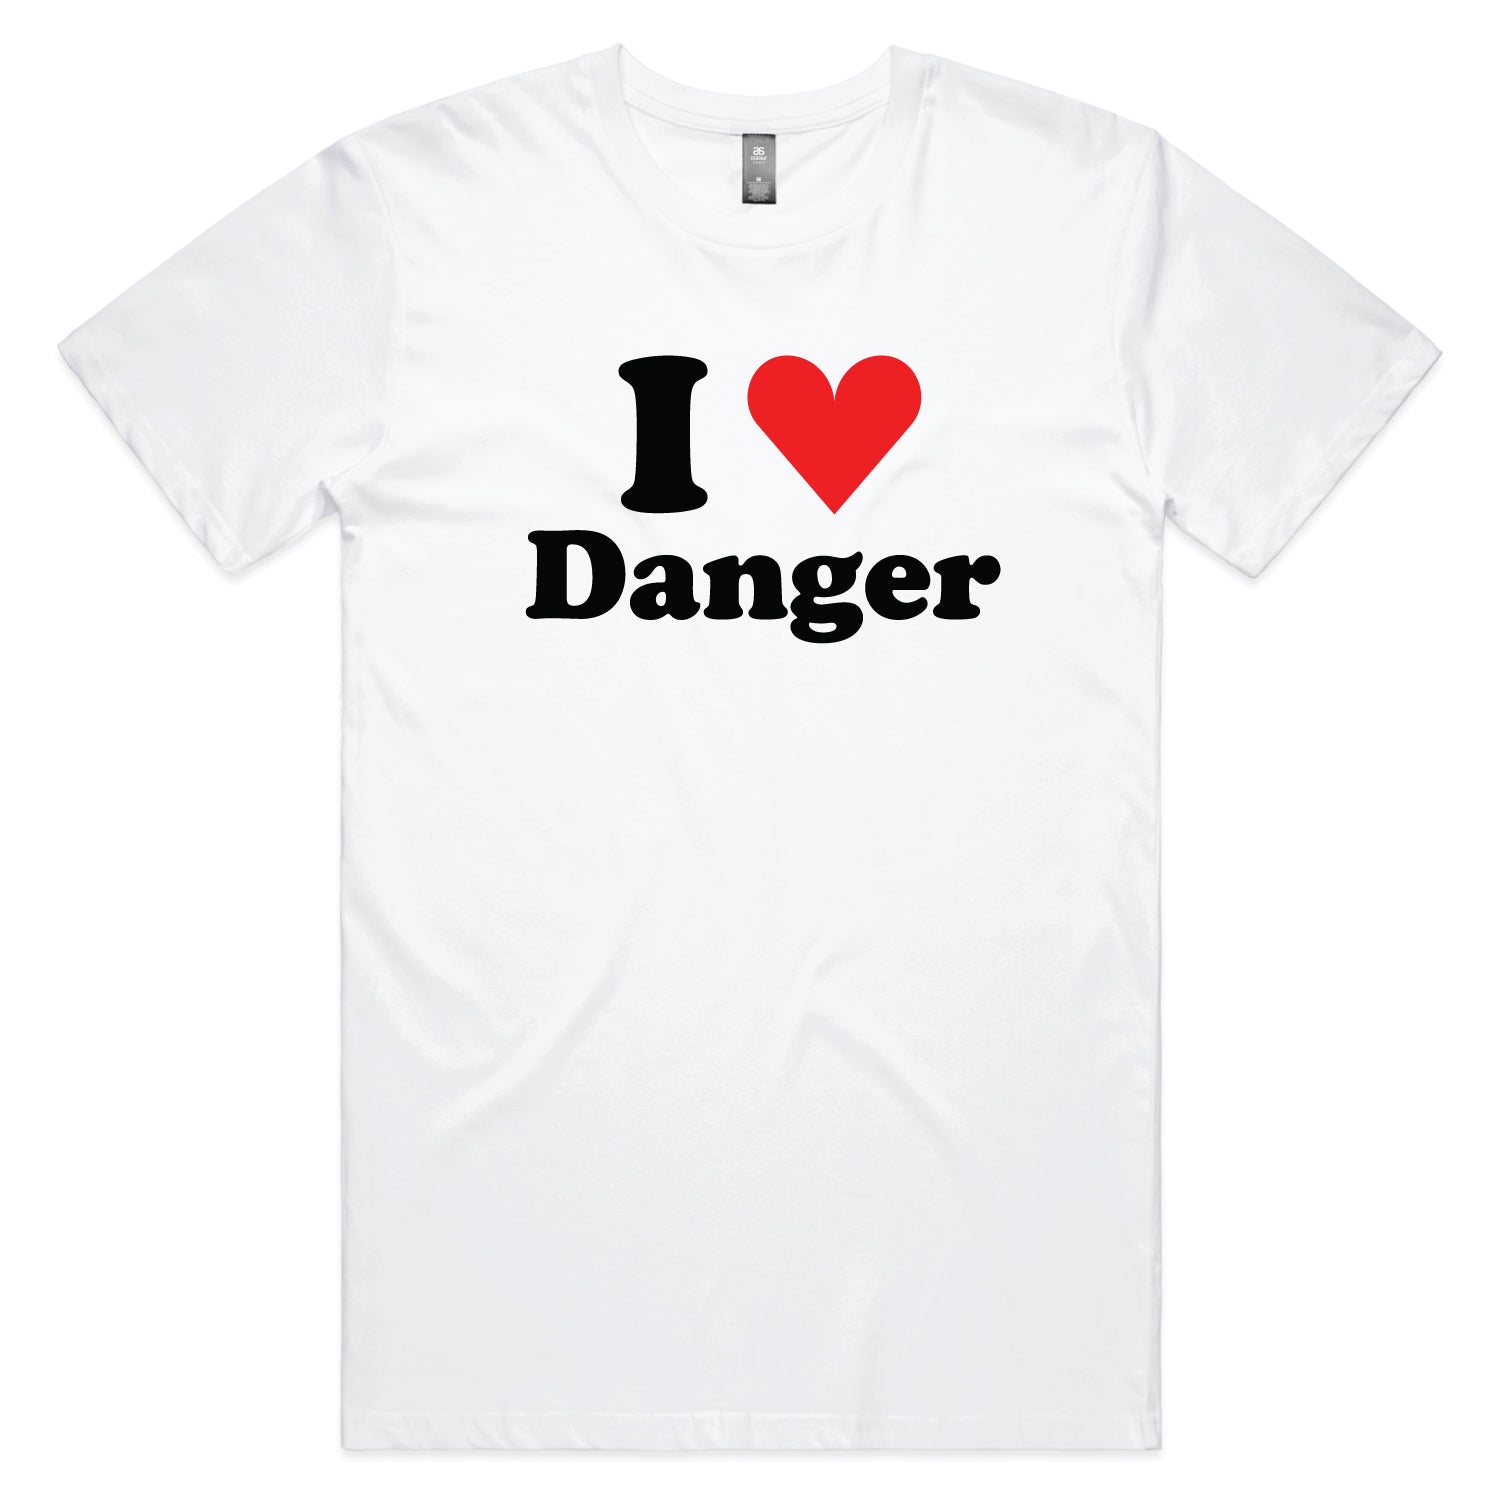 I Love Danger T-shirt